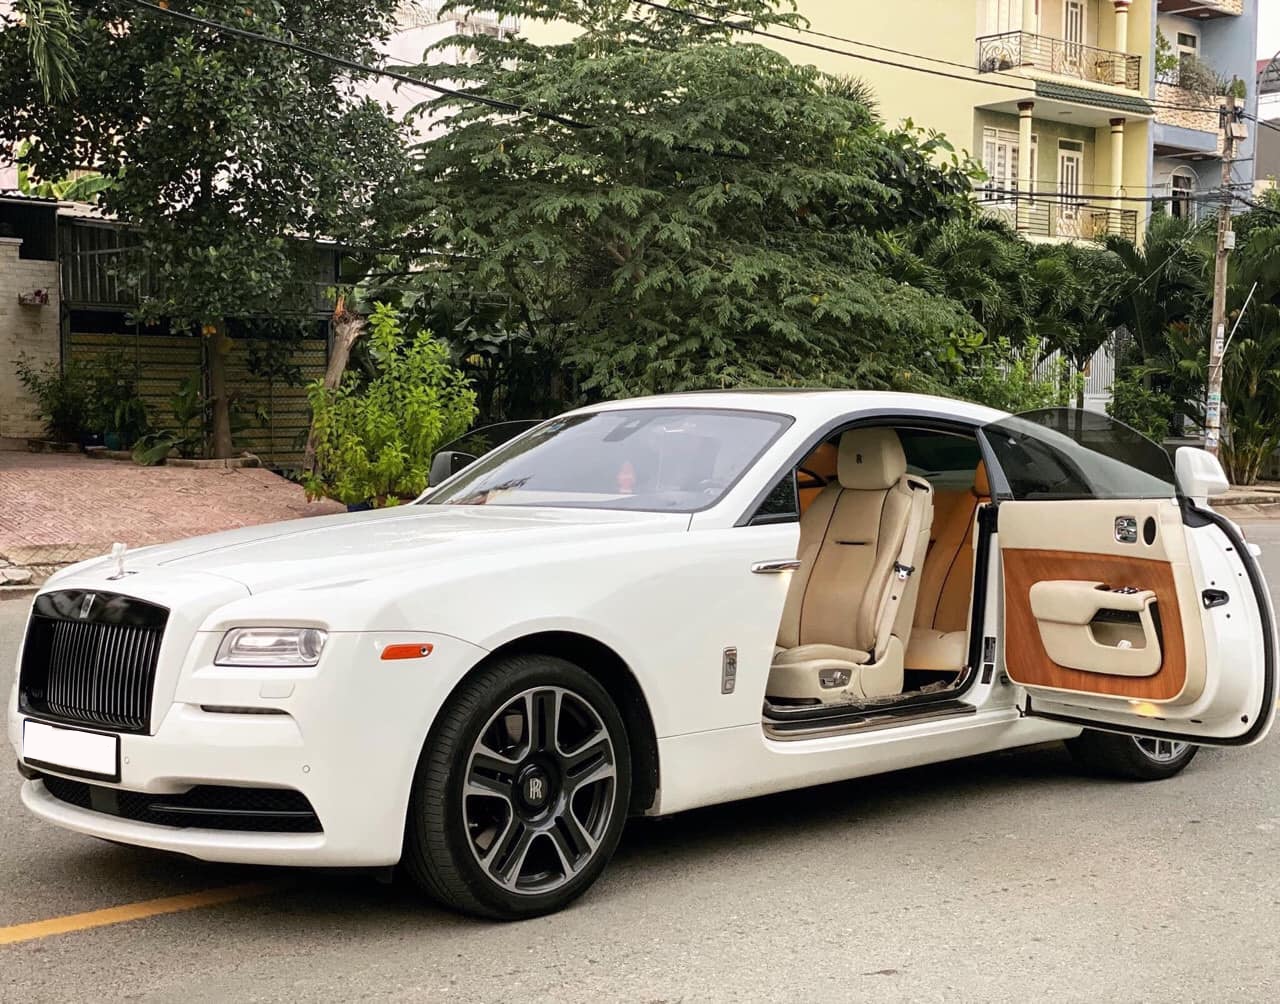 Hàng hiếm Rolls-Royce Wraith được rao bán cùng lời chia sẻ: Mua mới hơn 30 tỷ, bán cũ hơn 13 tỷ - Ảnh 4.